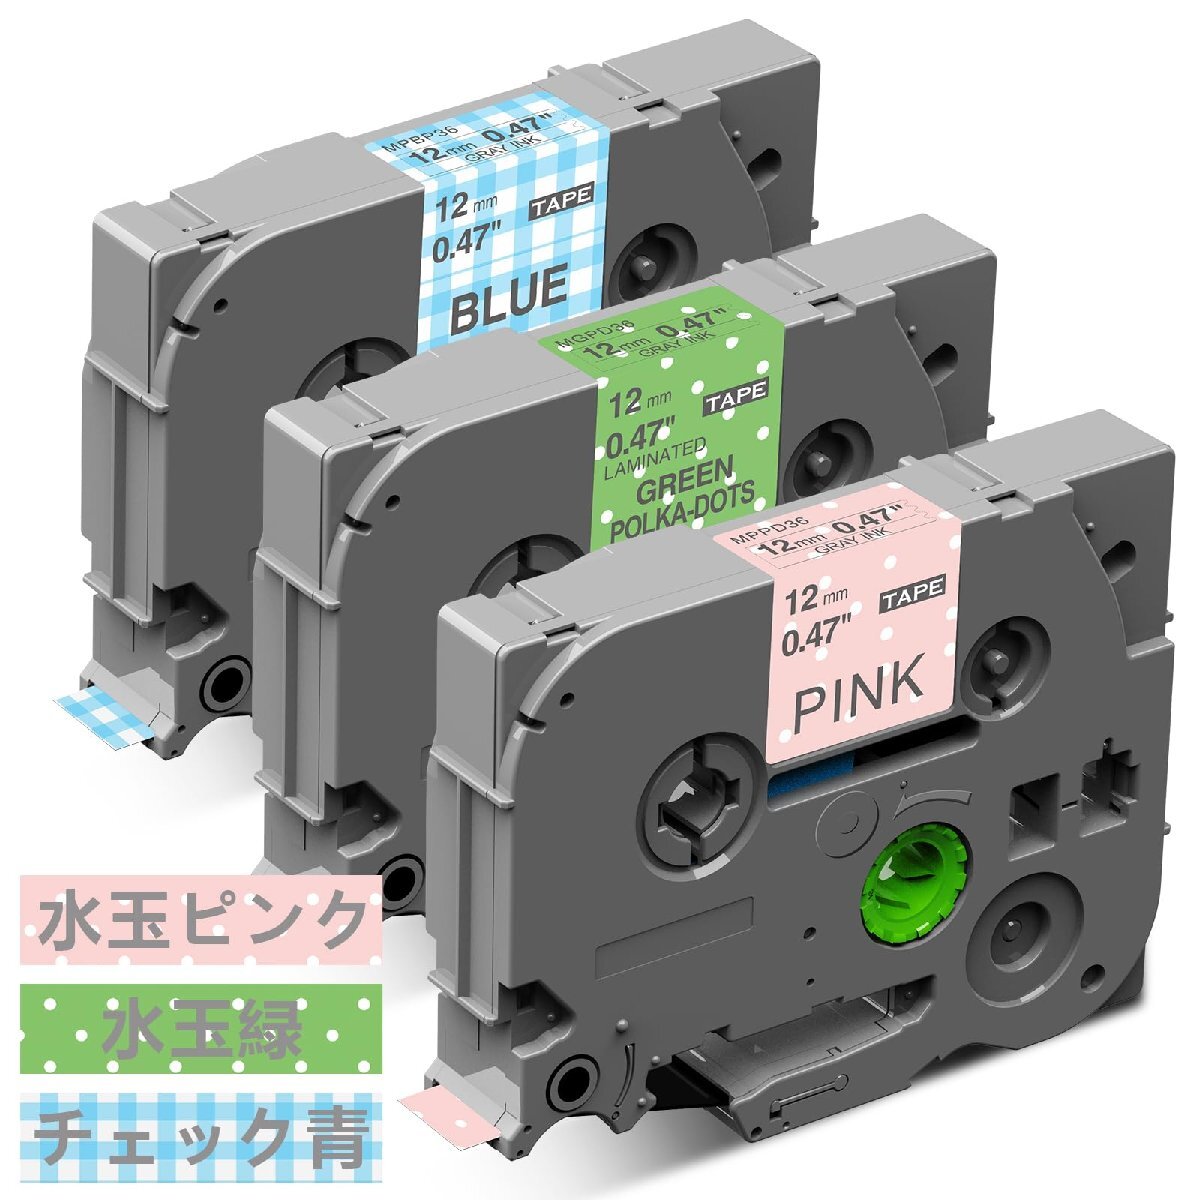 12mm ガーリー 水玉ピンク 水玉緑 チェック青 互換 Pタッチ テープ カートリッジ セット 3個セット、ブラザーBrotherと互換性のある_画像1